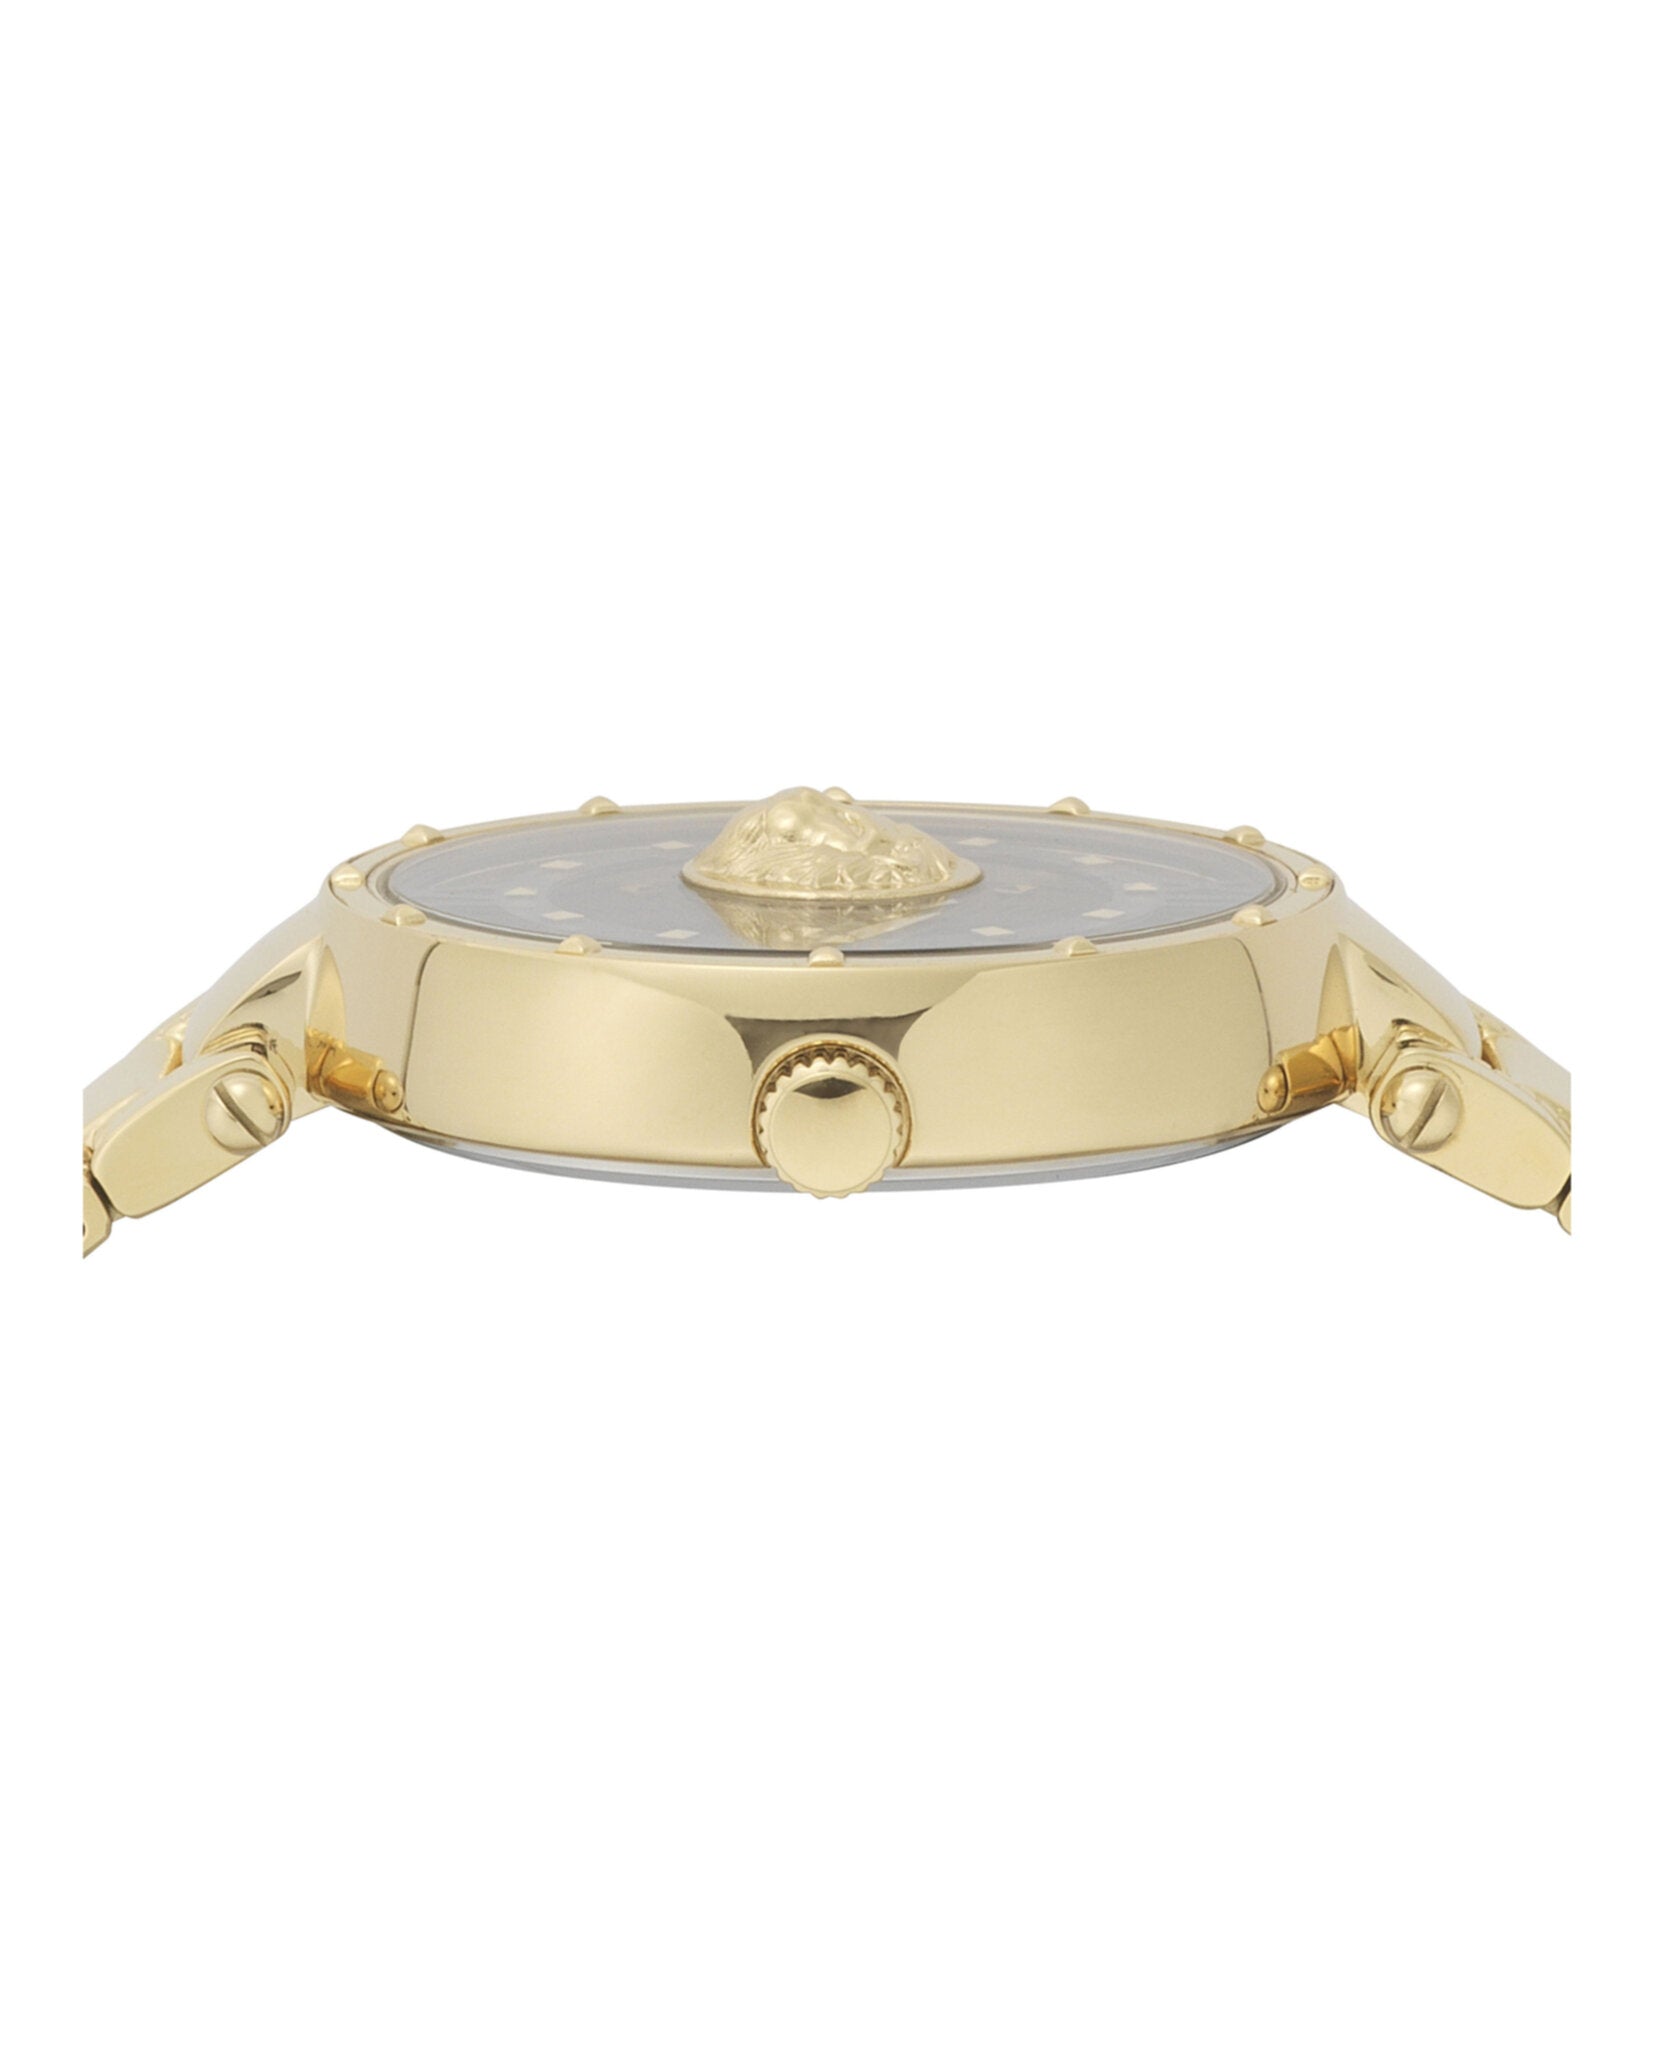 Moscova Bracelet Watch